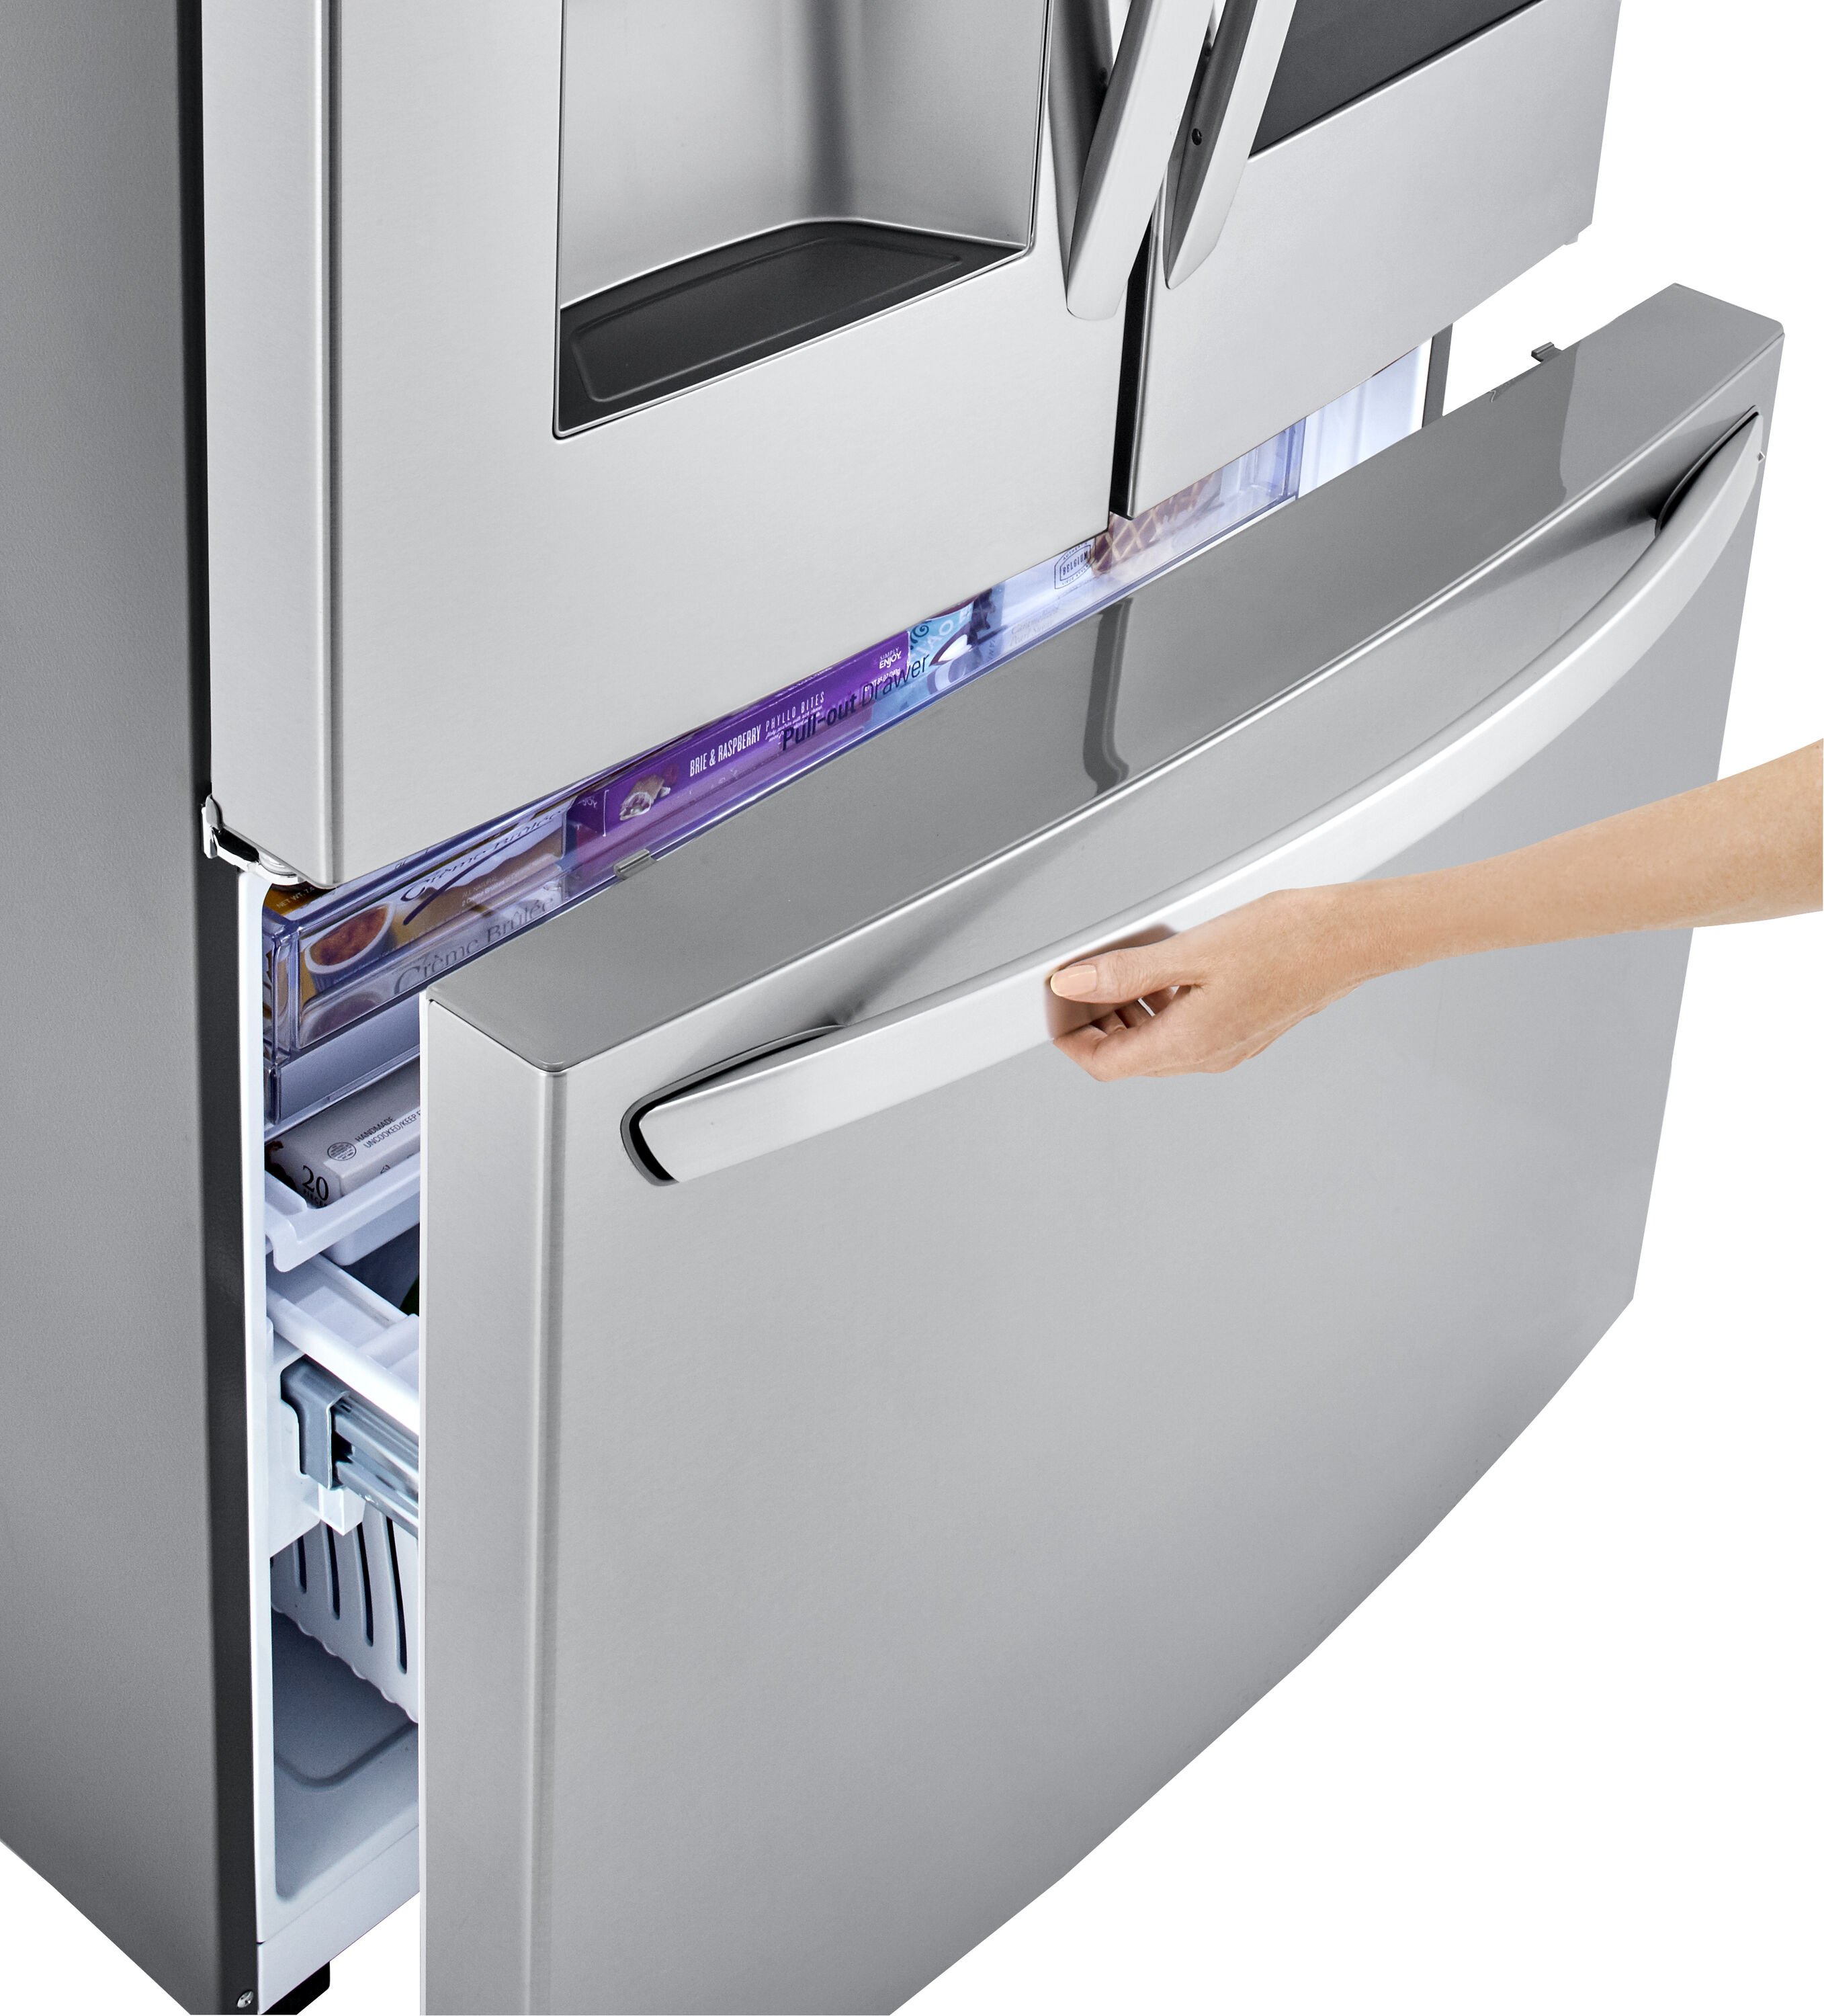 LG Touchscreen Smart Wi-Fi Enabled 29.7-cu ft 4-Door French Door  Refrigerator with Ice Maker and Door within Door (Fingerprint Resistant  Steel) ENERGY STAR at